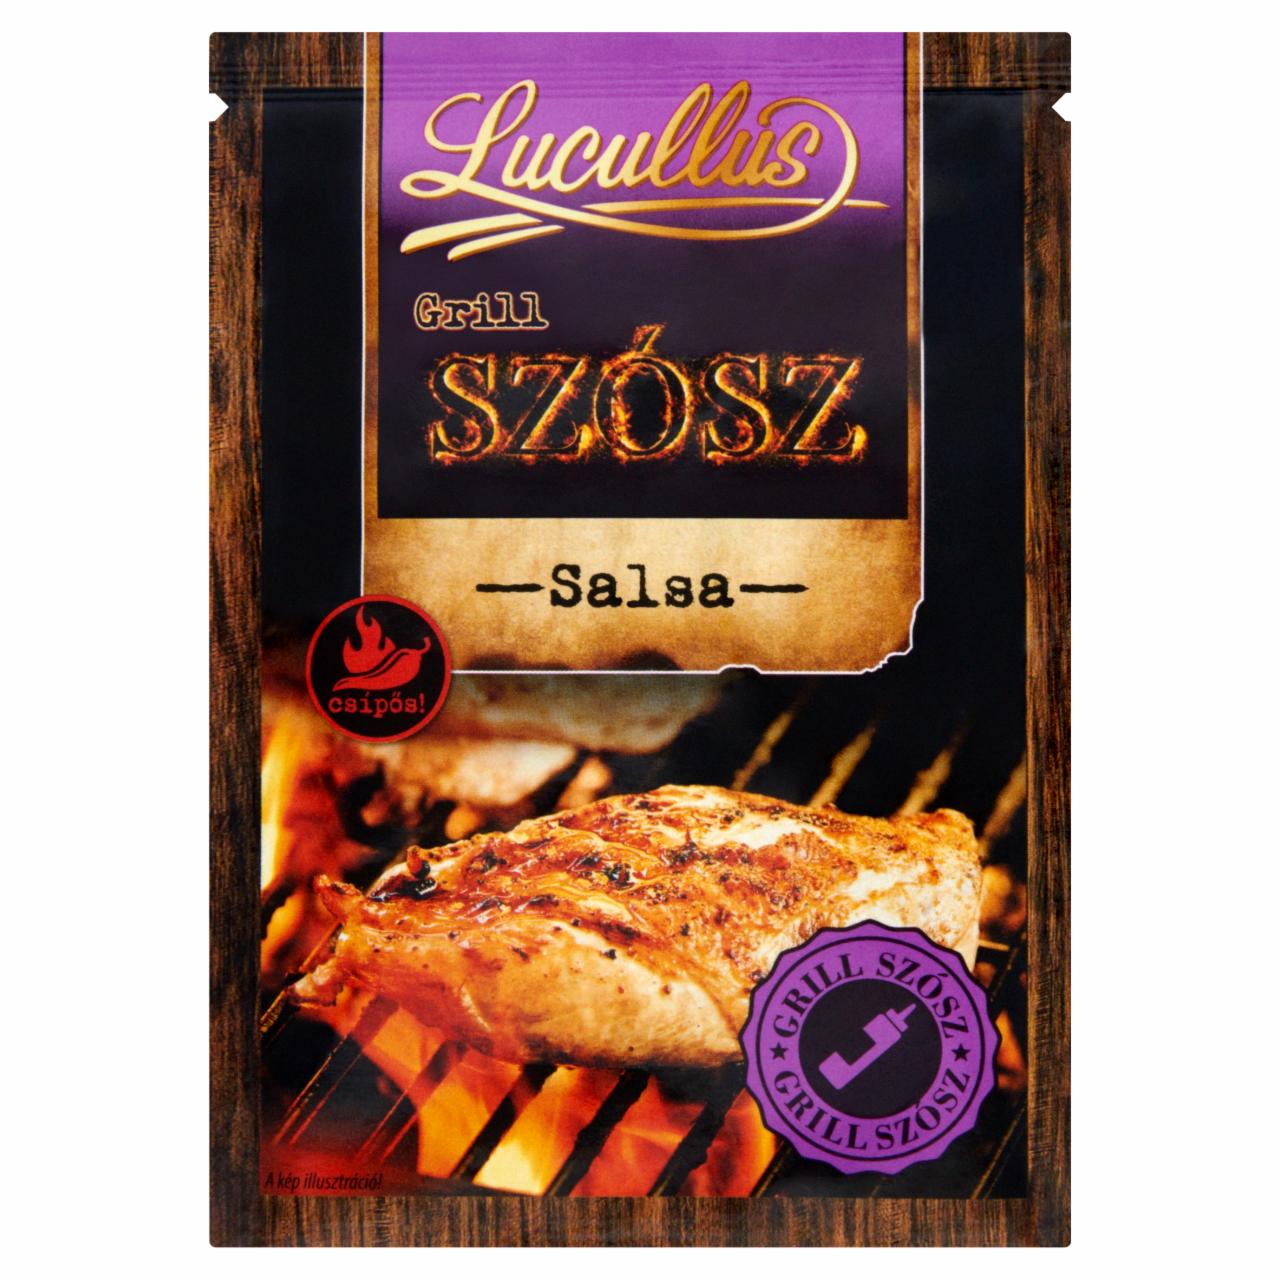 Képek - Lucullus Grill szósz salsa csípős szósz por 20 g